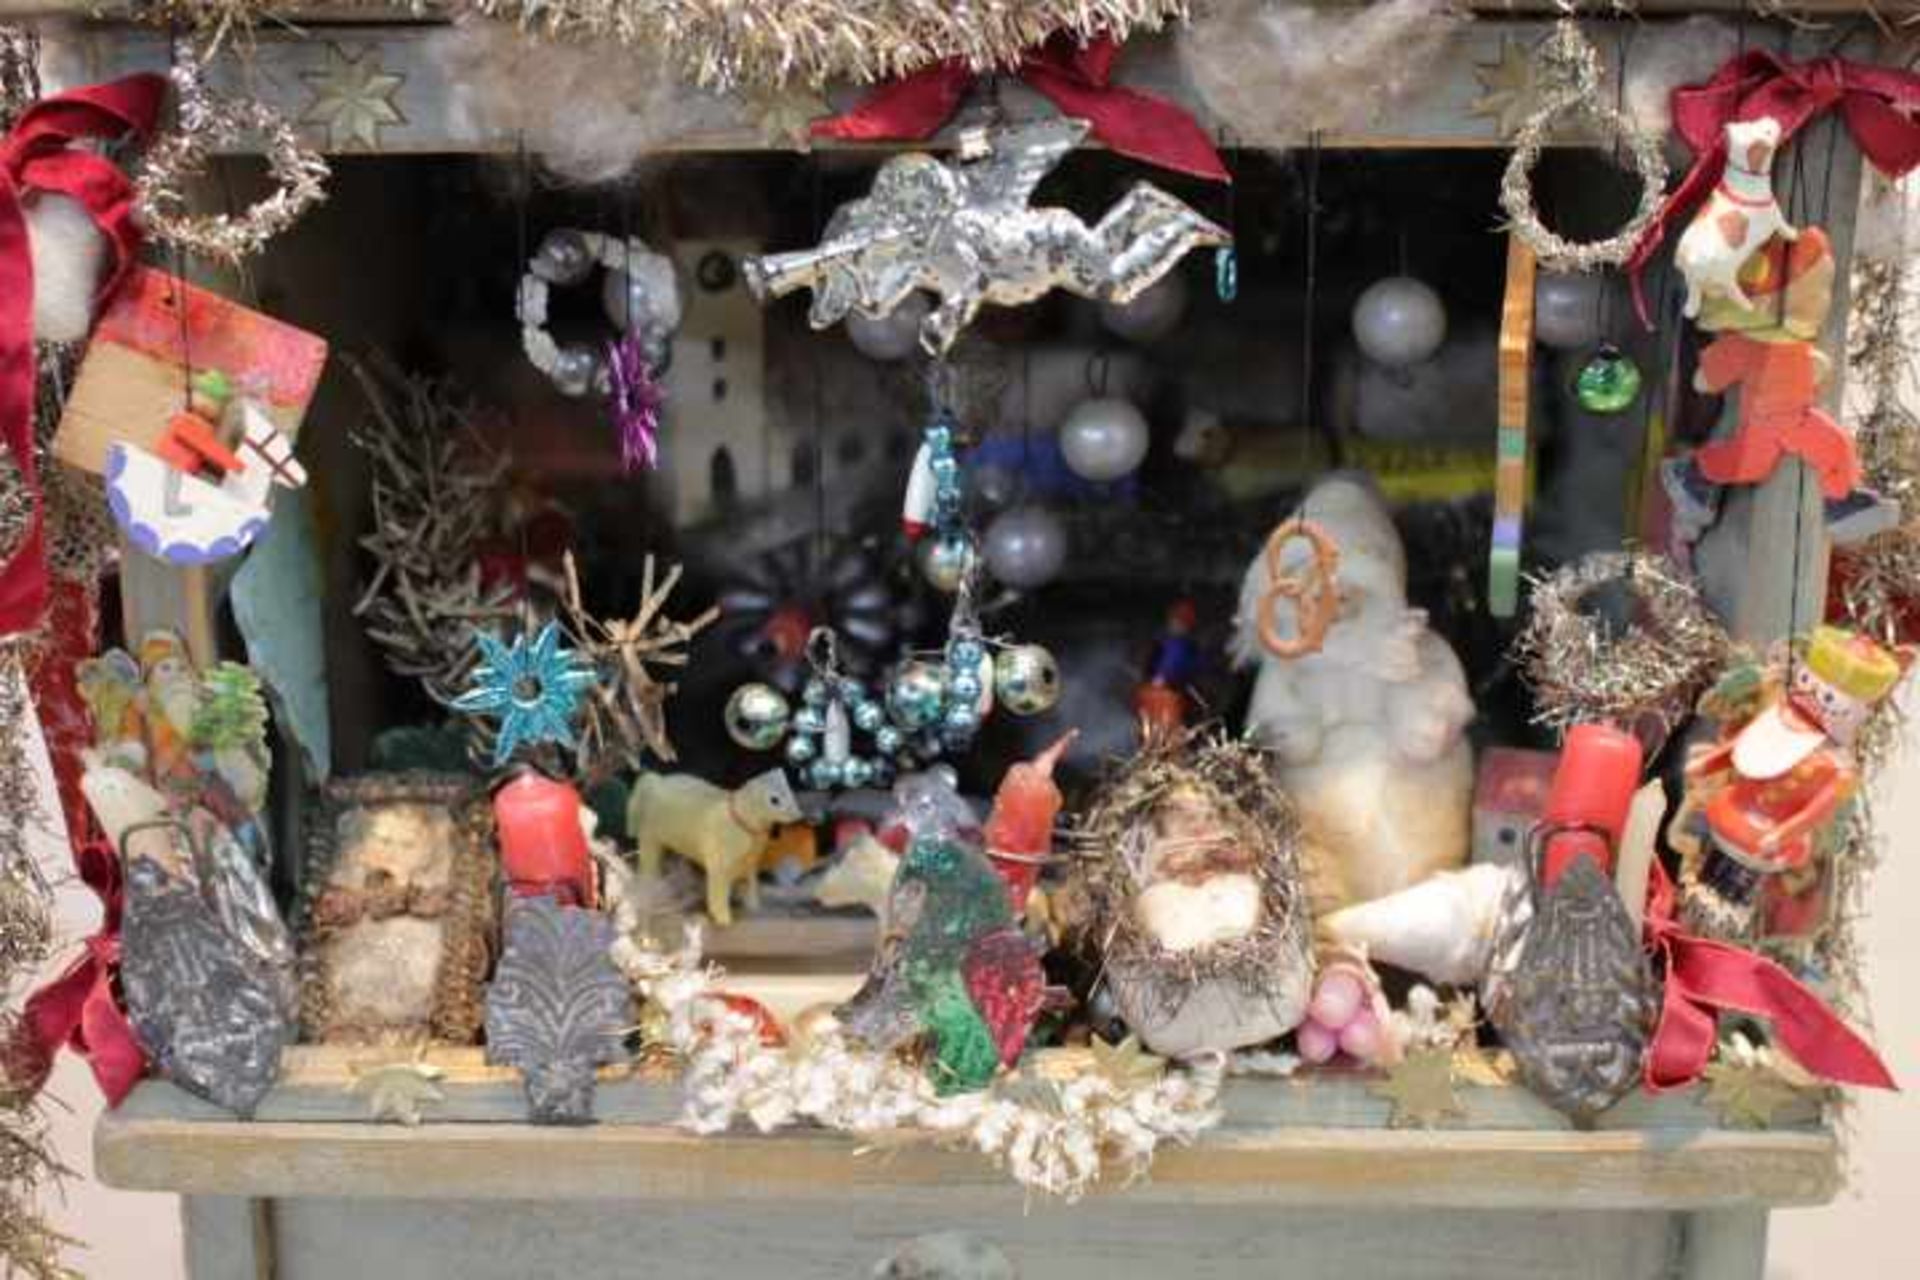 Erzgebirge Weihnachtsmarkt Standmit umfangreichem ZubehörFiguren,Glas,Tüten uvm.Guter - Image 2 of 2